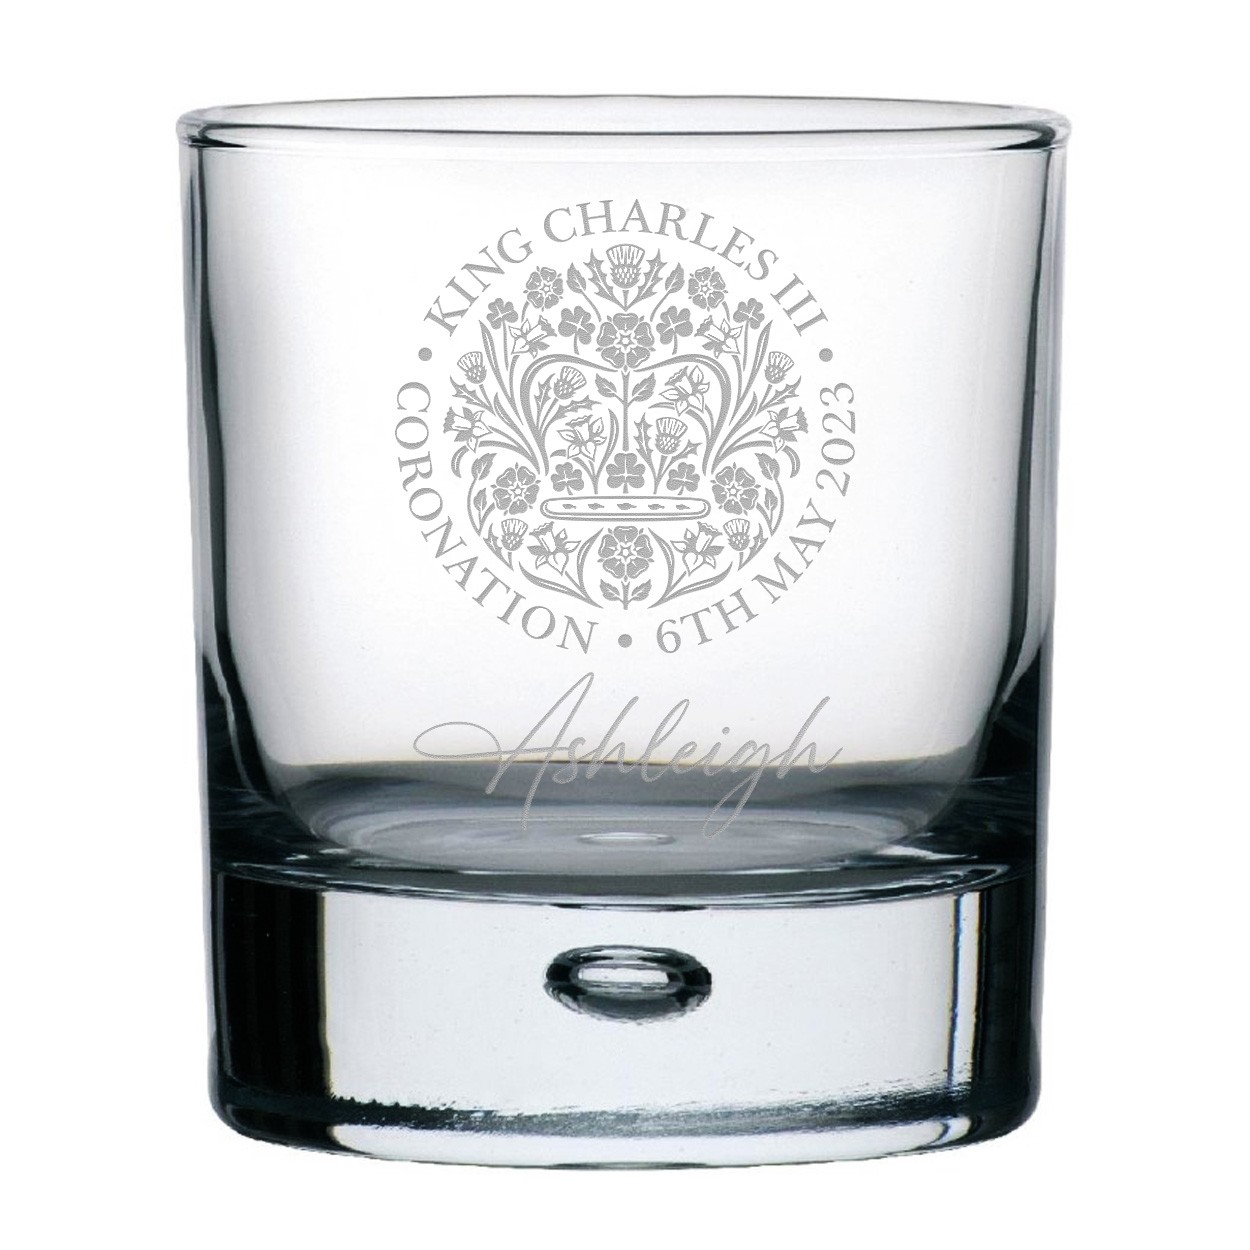 Personalised Coronation Emblem King Charles III Whisky Glass Design Bubble Base Old Fashioned Tumbler